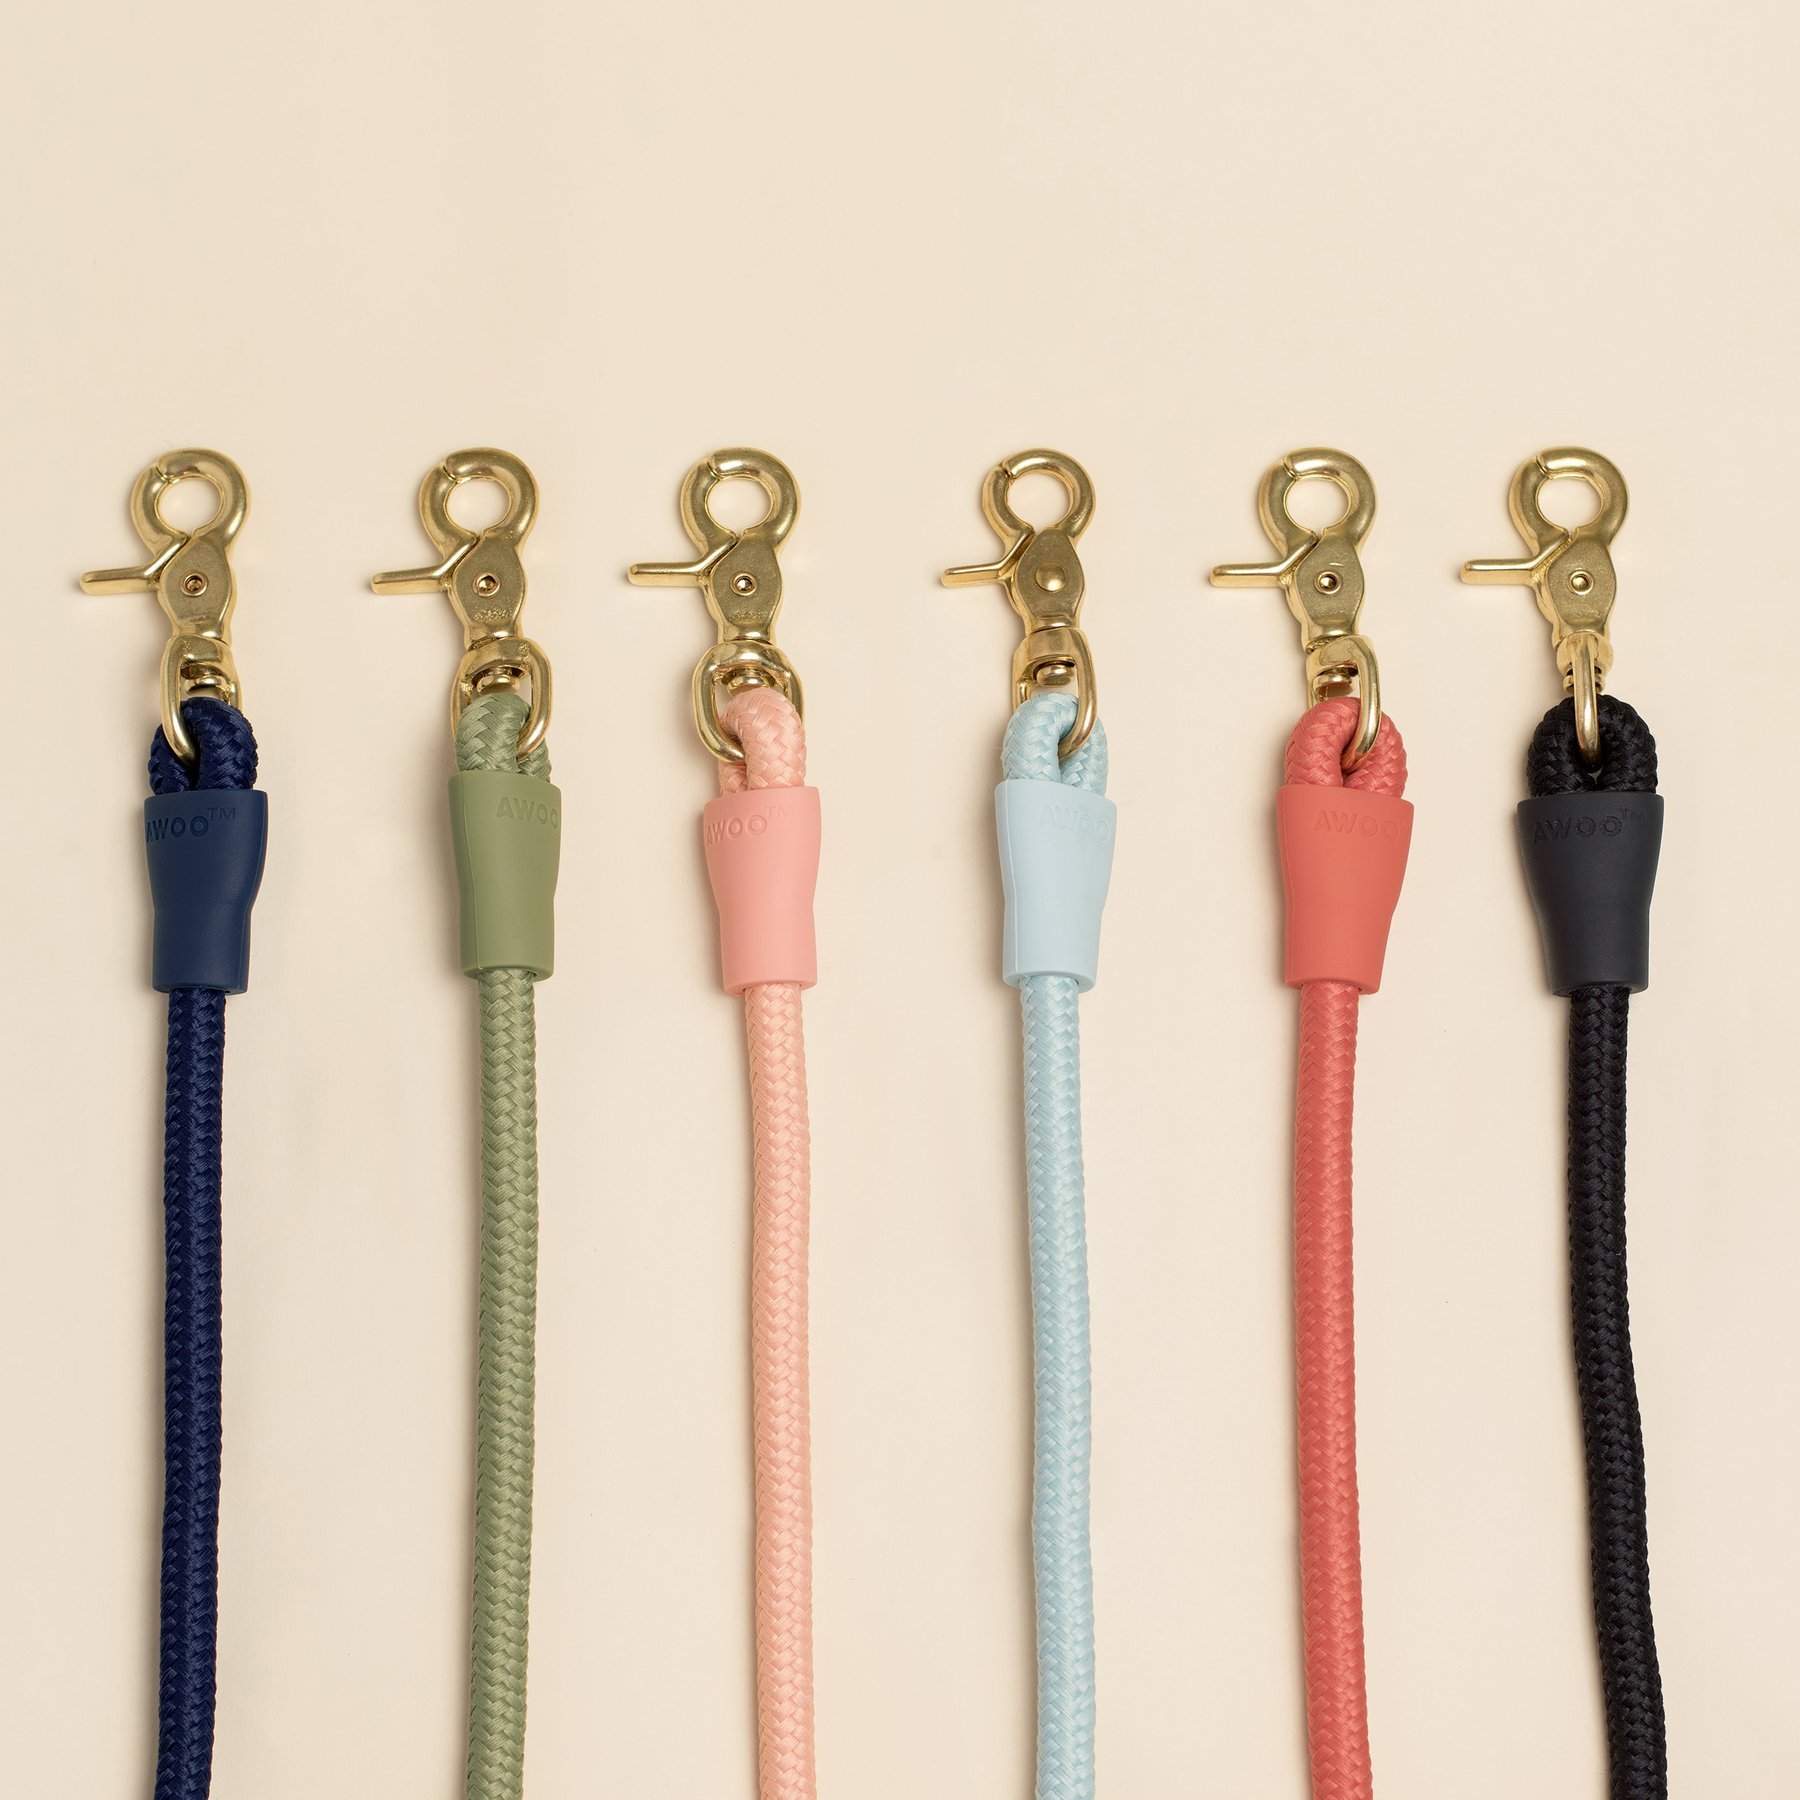 Dog leash in six different colors: black, orange, light blue, pink, olive green, navy blue.